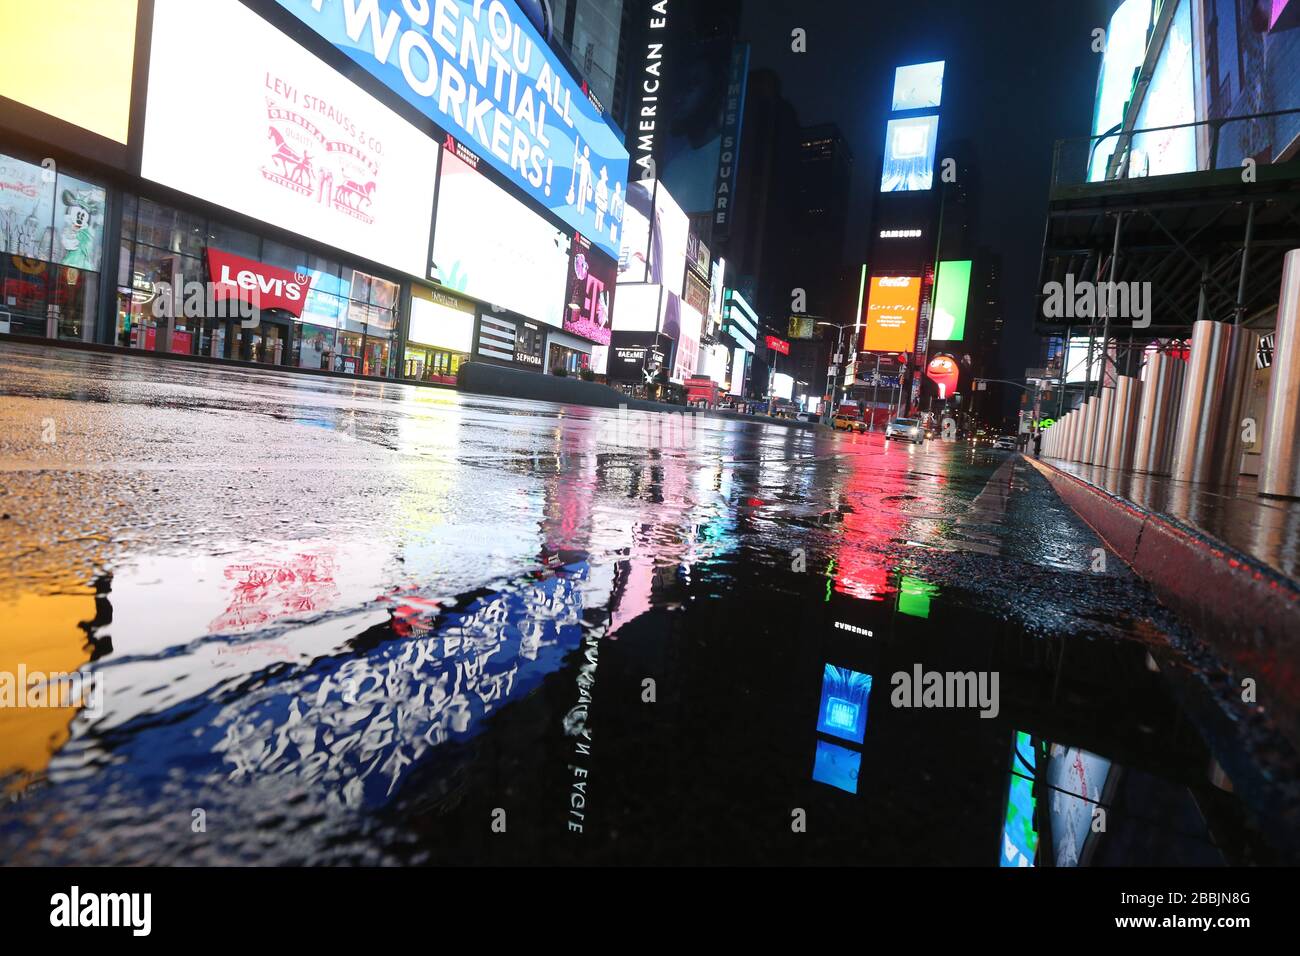 28 marzo 2020, New York, NY, Stati Uniti: Un Times Square vuoto in una notte piovosa durante la crisi del COVID-19 o del nuovo coronavirus. (Immagine di credito: © Dan HerrickZUMA Wire) Foto Stock